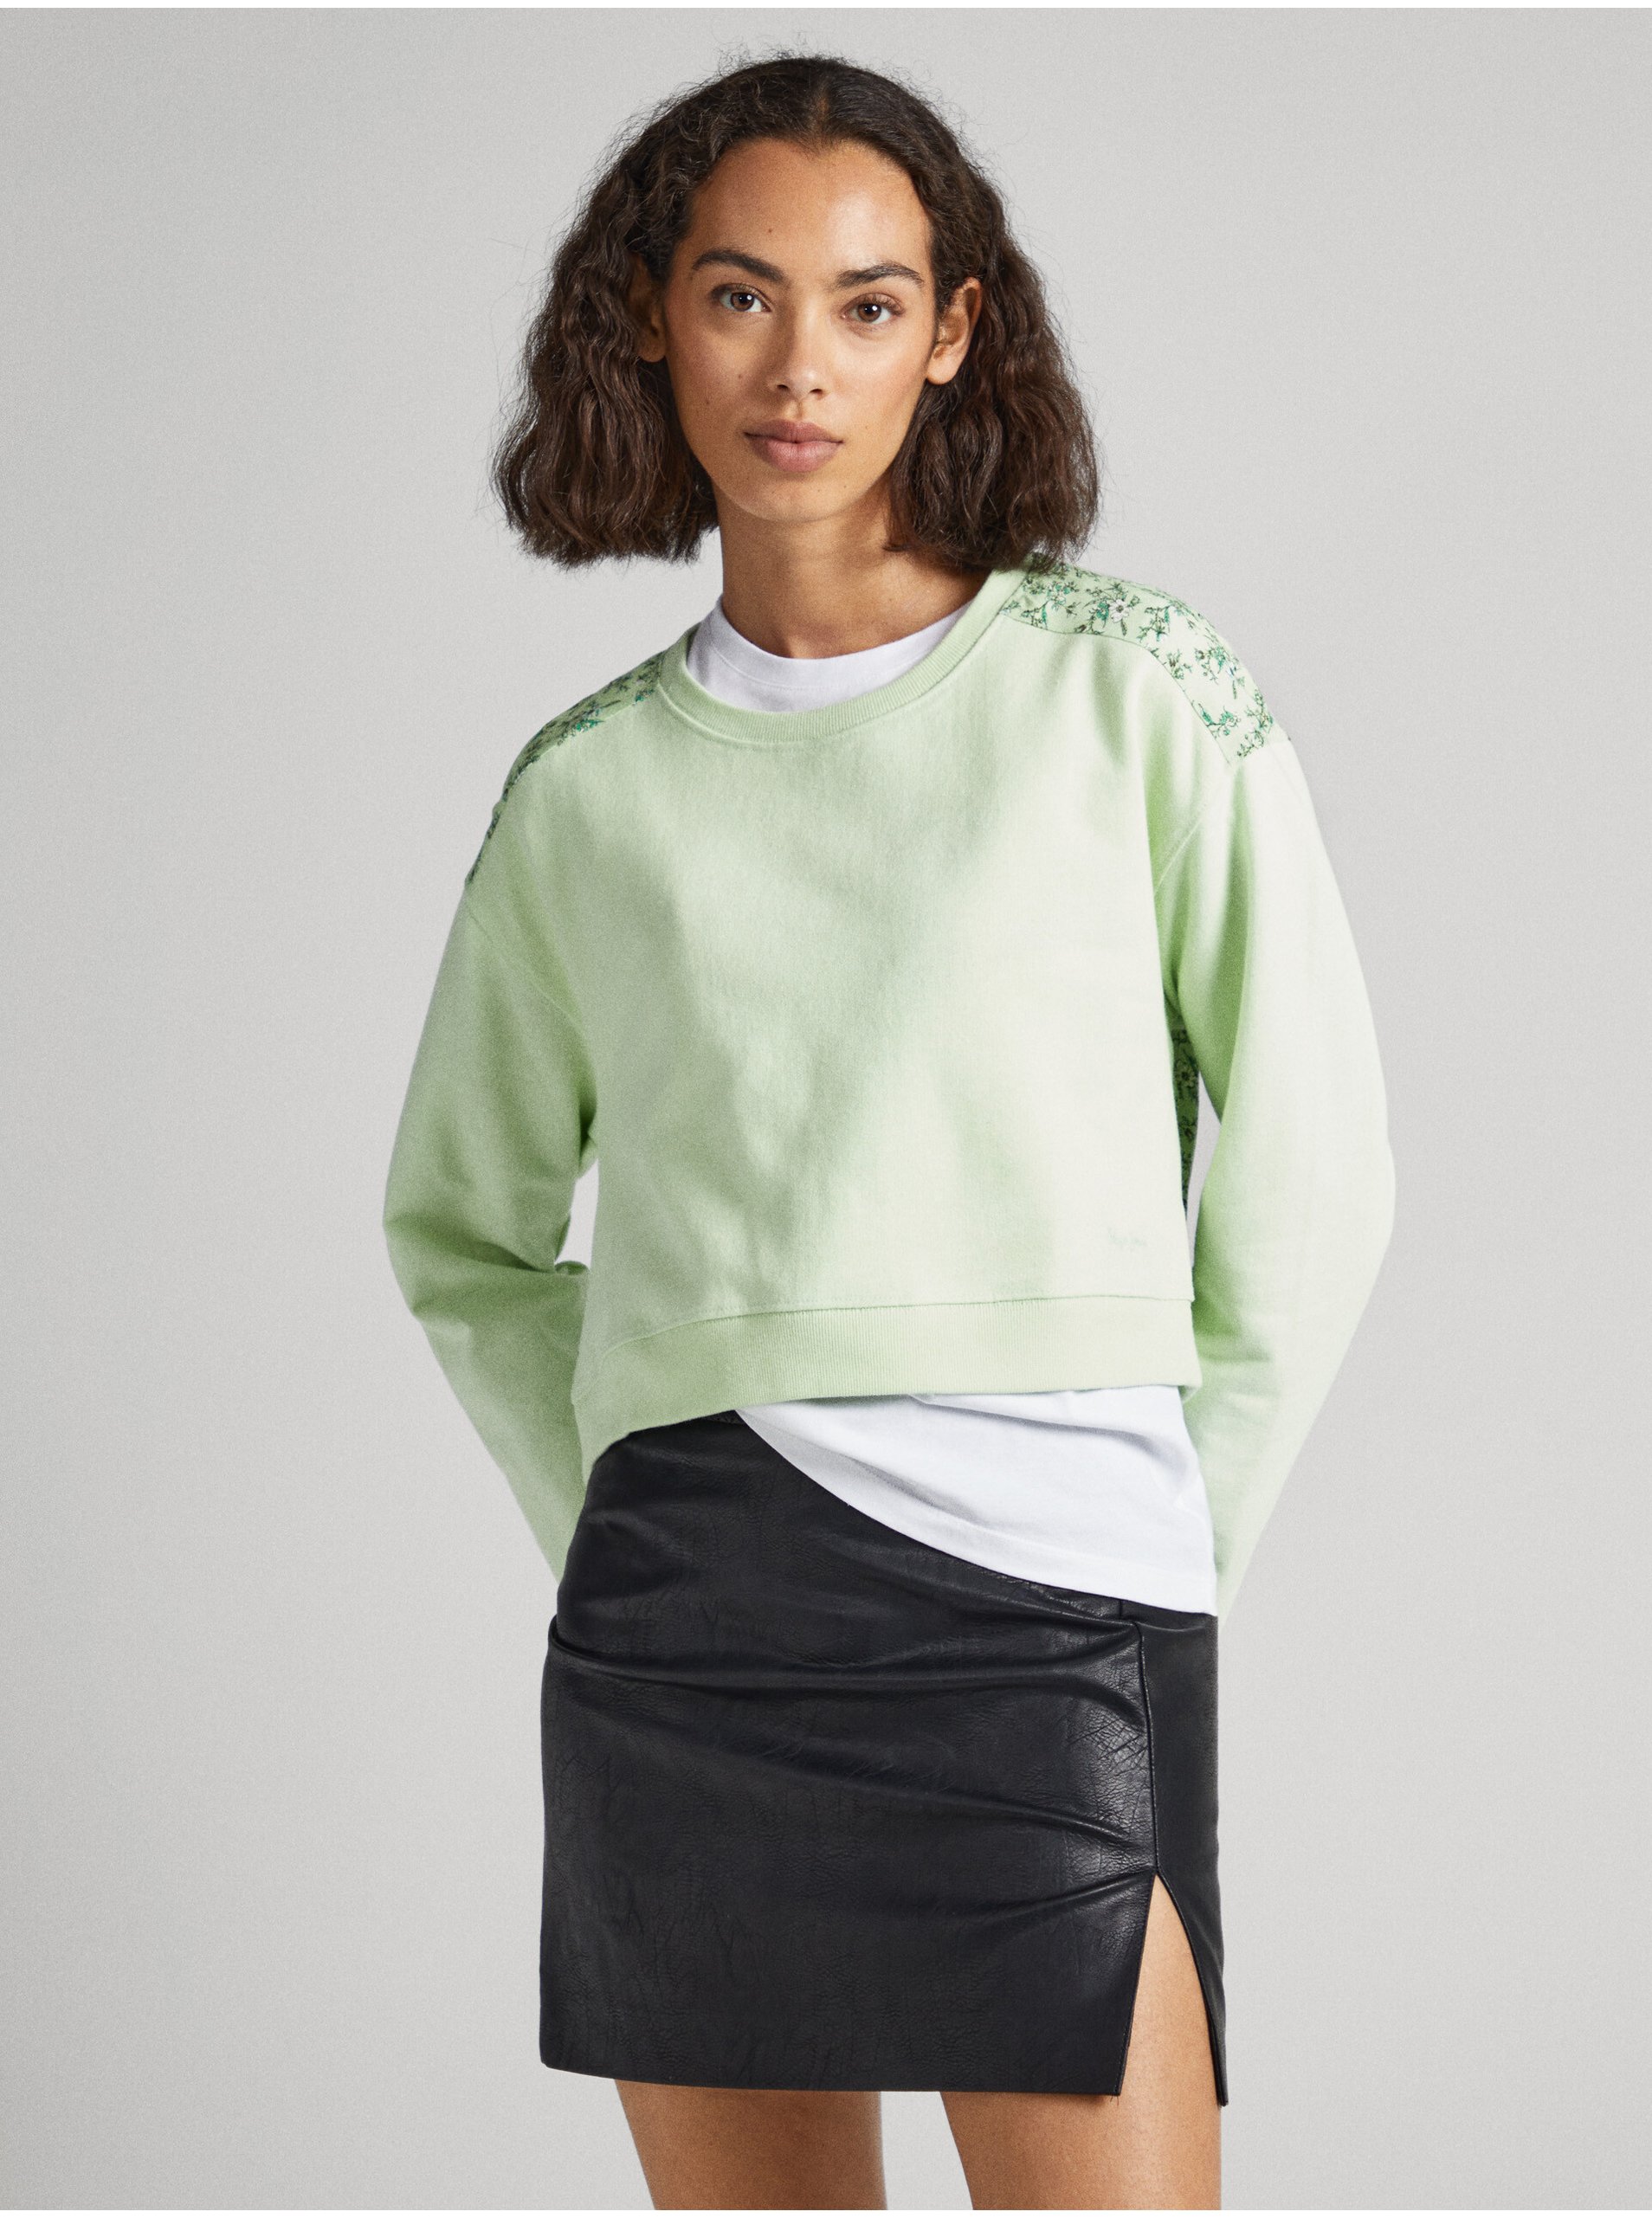 Light Green Women's Floral Sweatshirt Pepe Jeans Alissa - Women